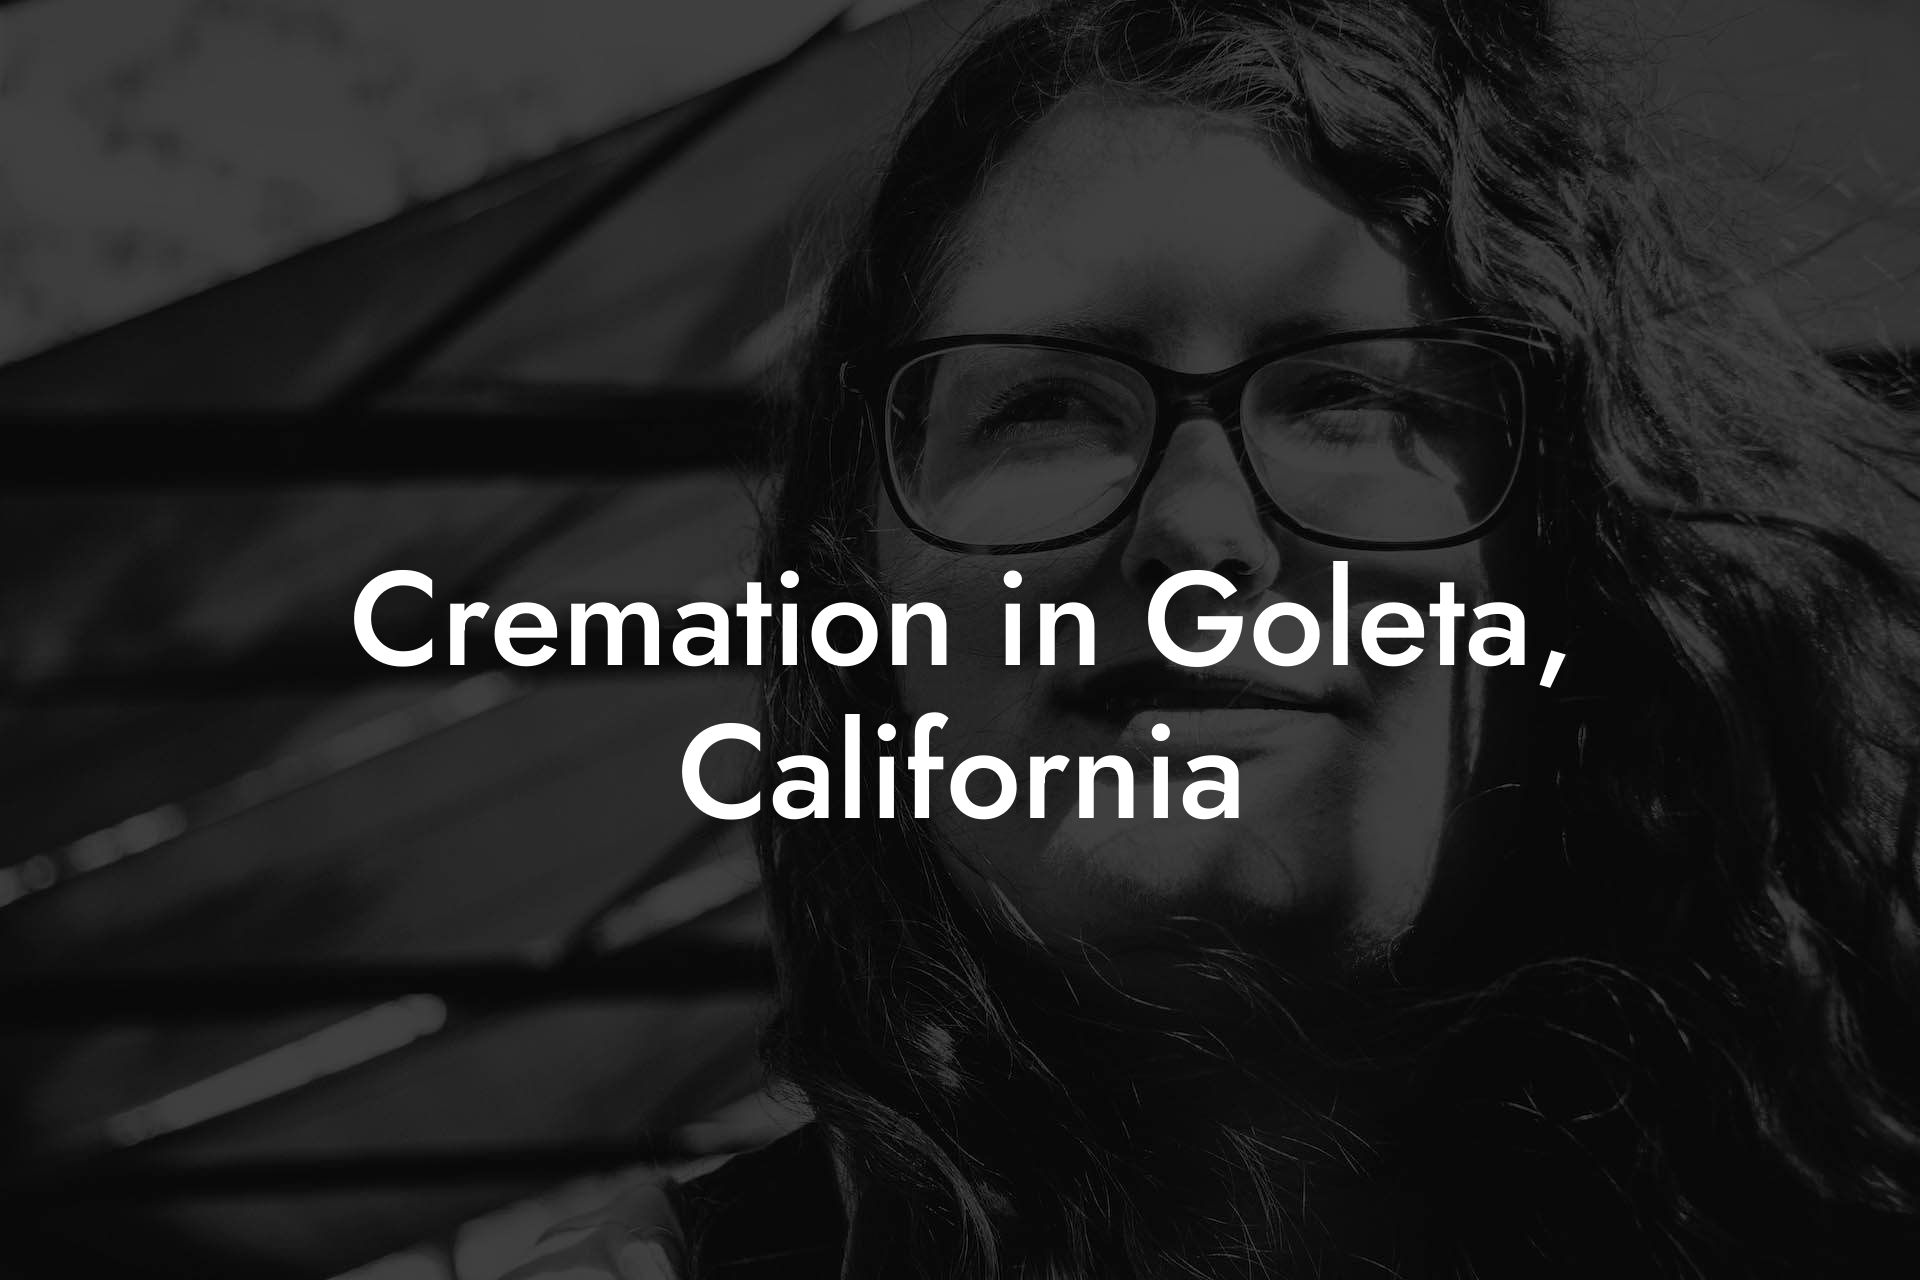 Cremation in Goleta, California